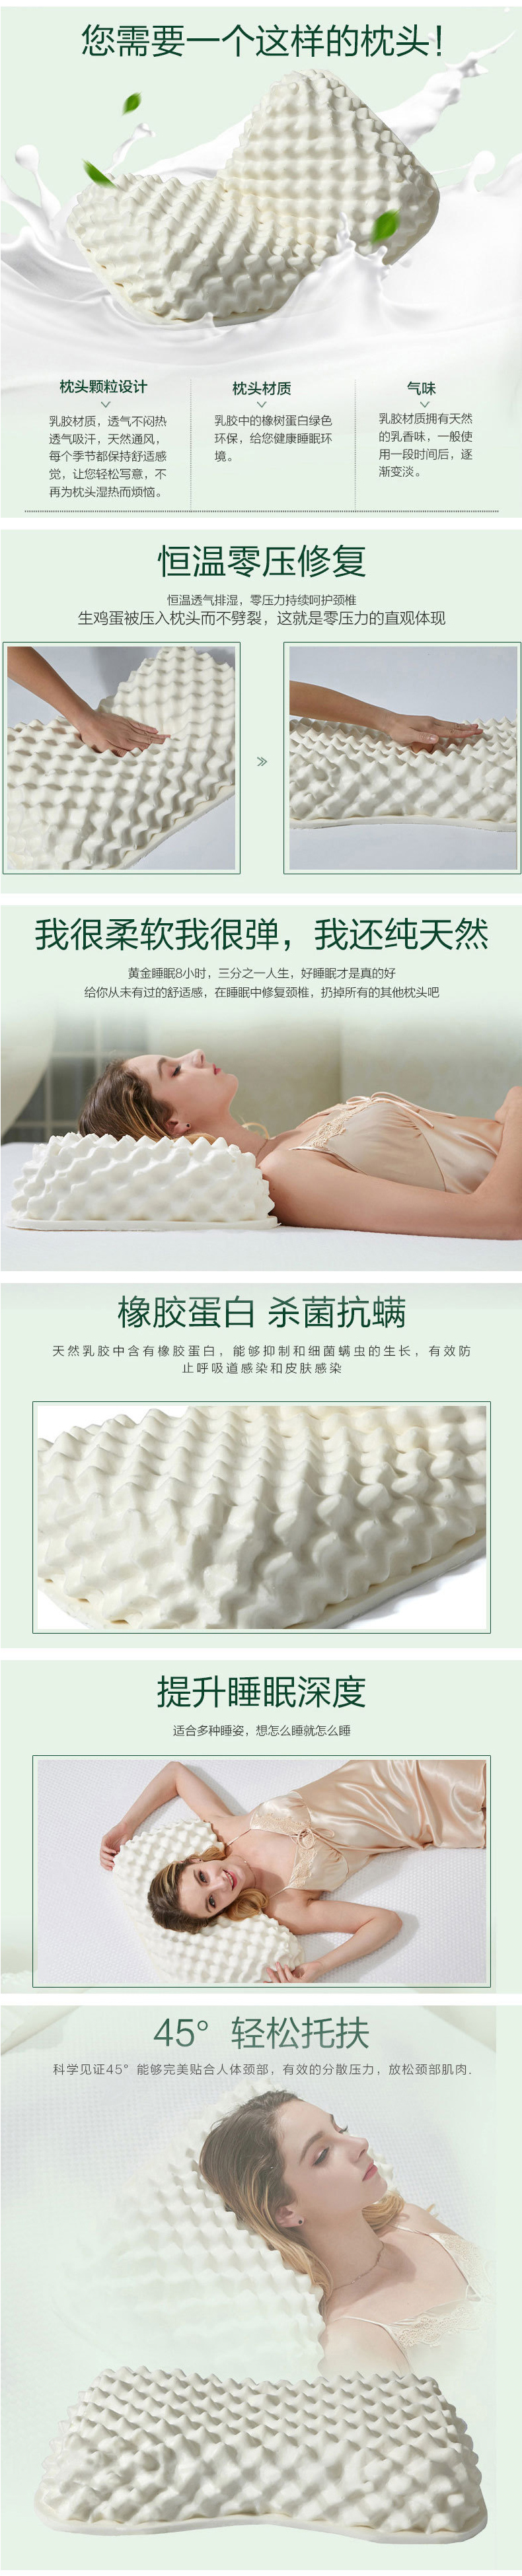 泰国乳胶天然乳胶枕保健按摩枕女士枕大颗粒按摩枕